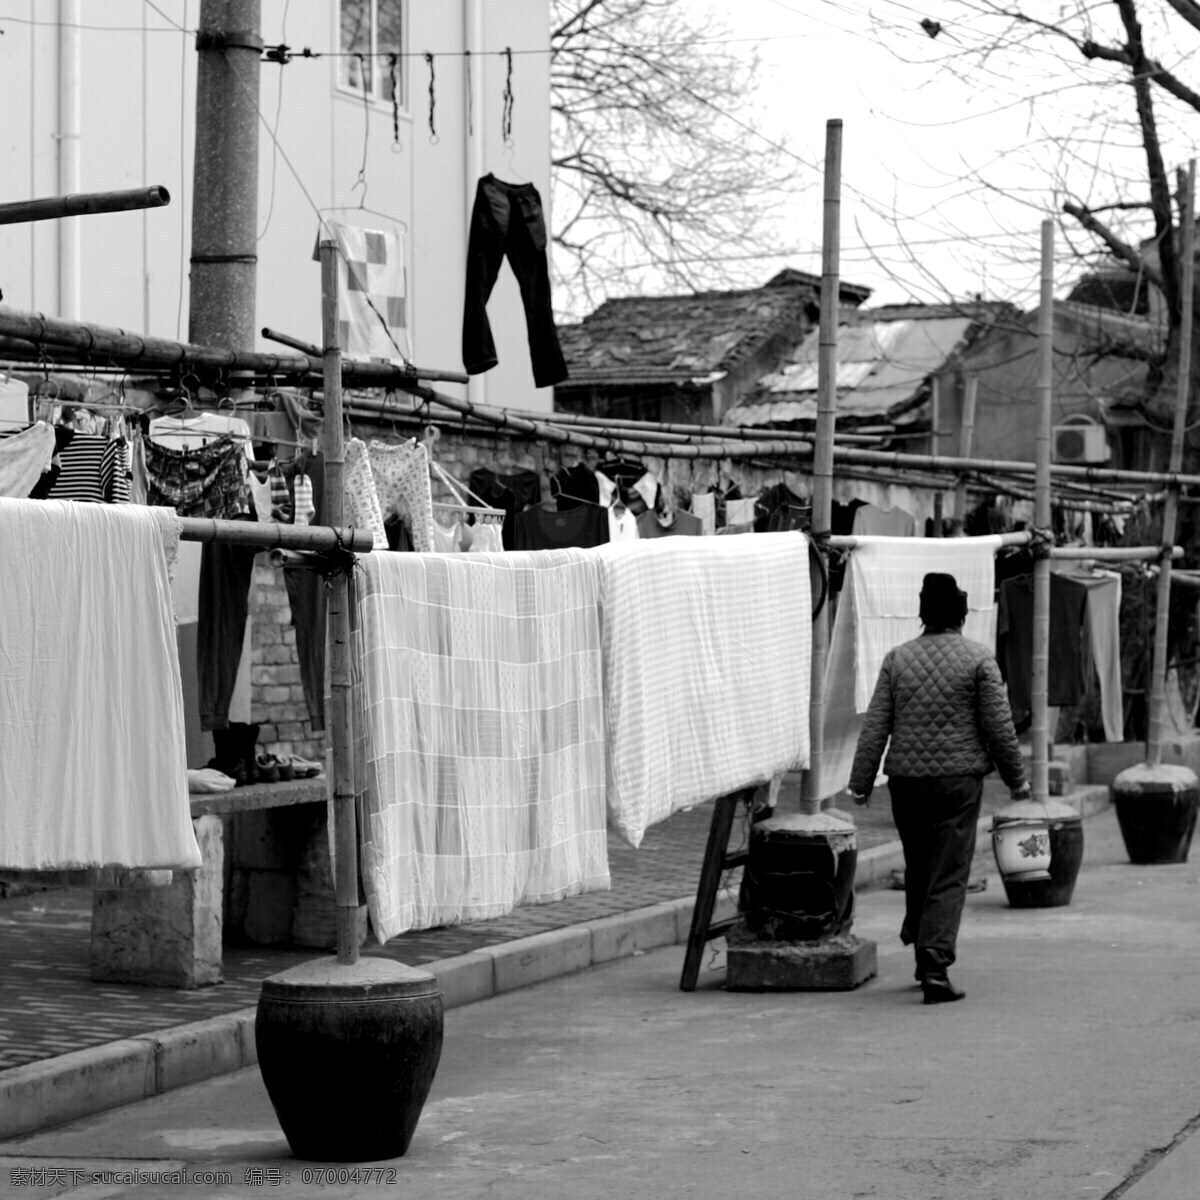 弄堂口晒被子 上海 老弄堂 晒被子 旧式 老上海 睡衣 上海人文 人文景观 旅游摄影